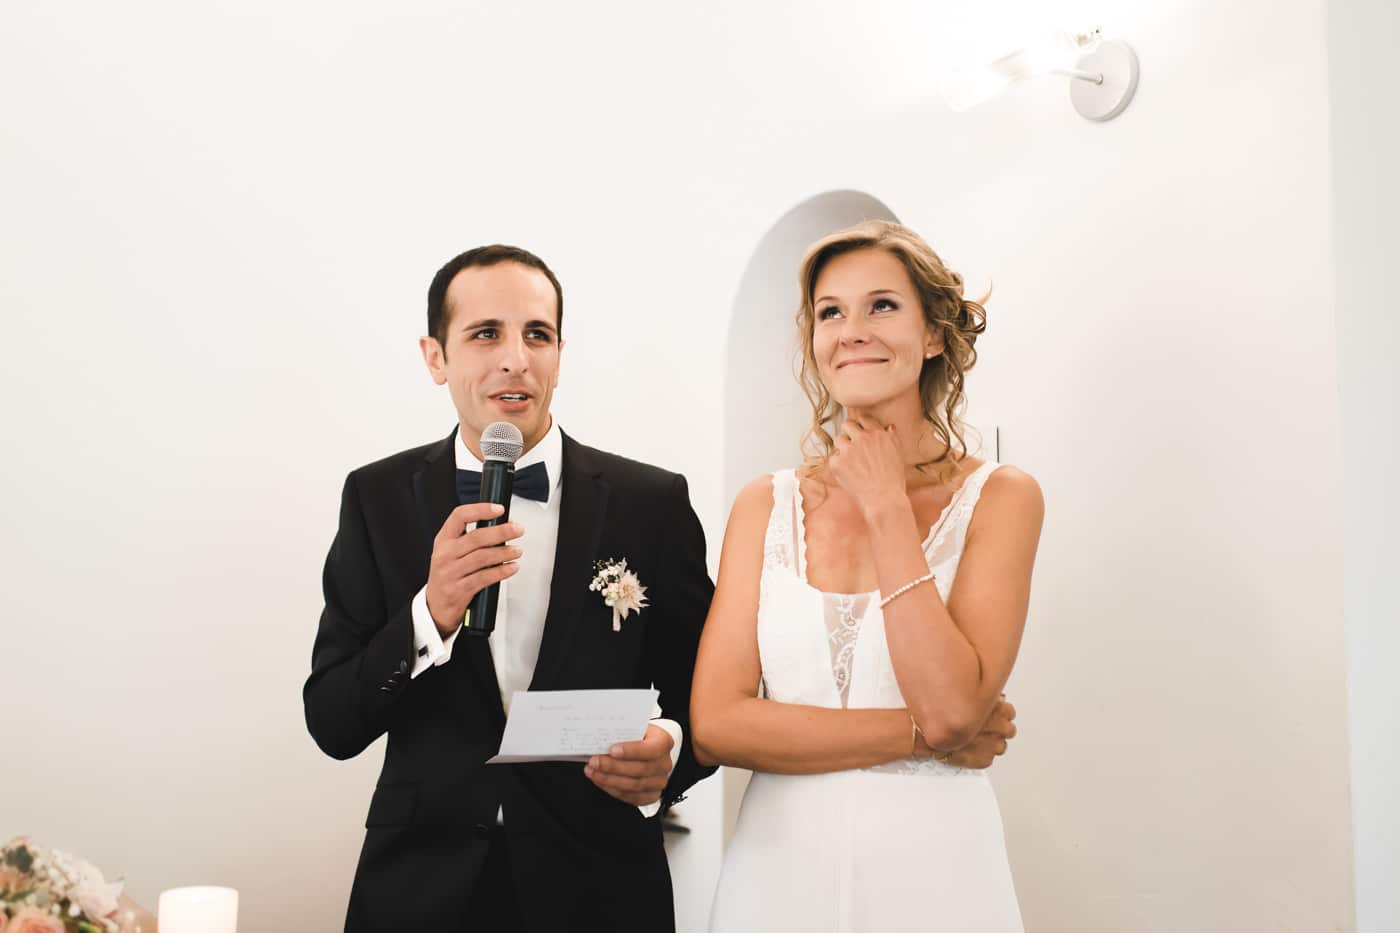 Le marié s'exprime lors de la cérémonie à La Fouly en Valais